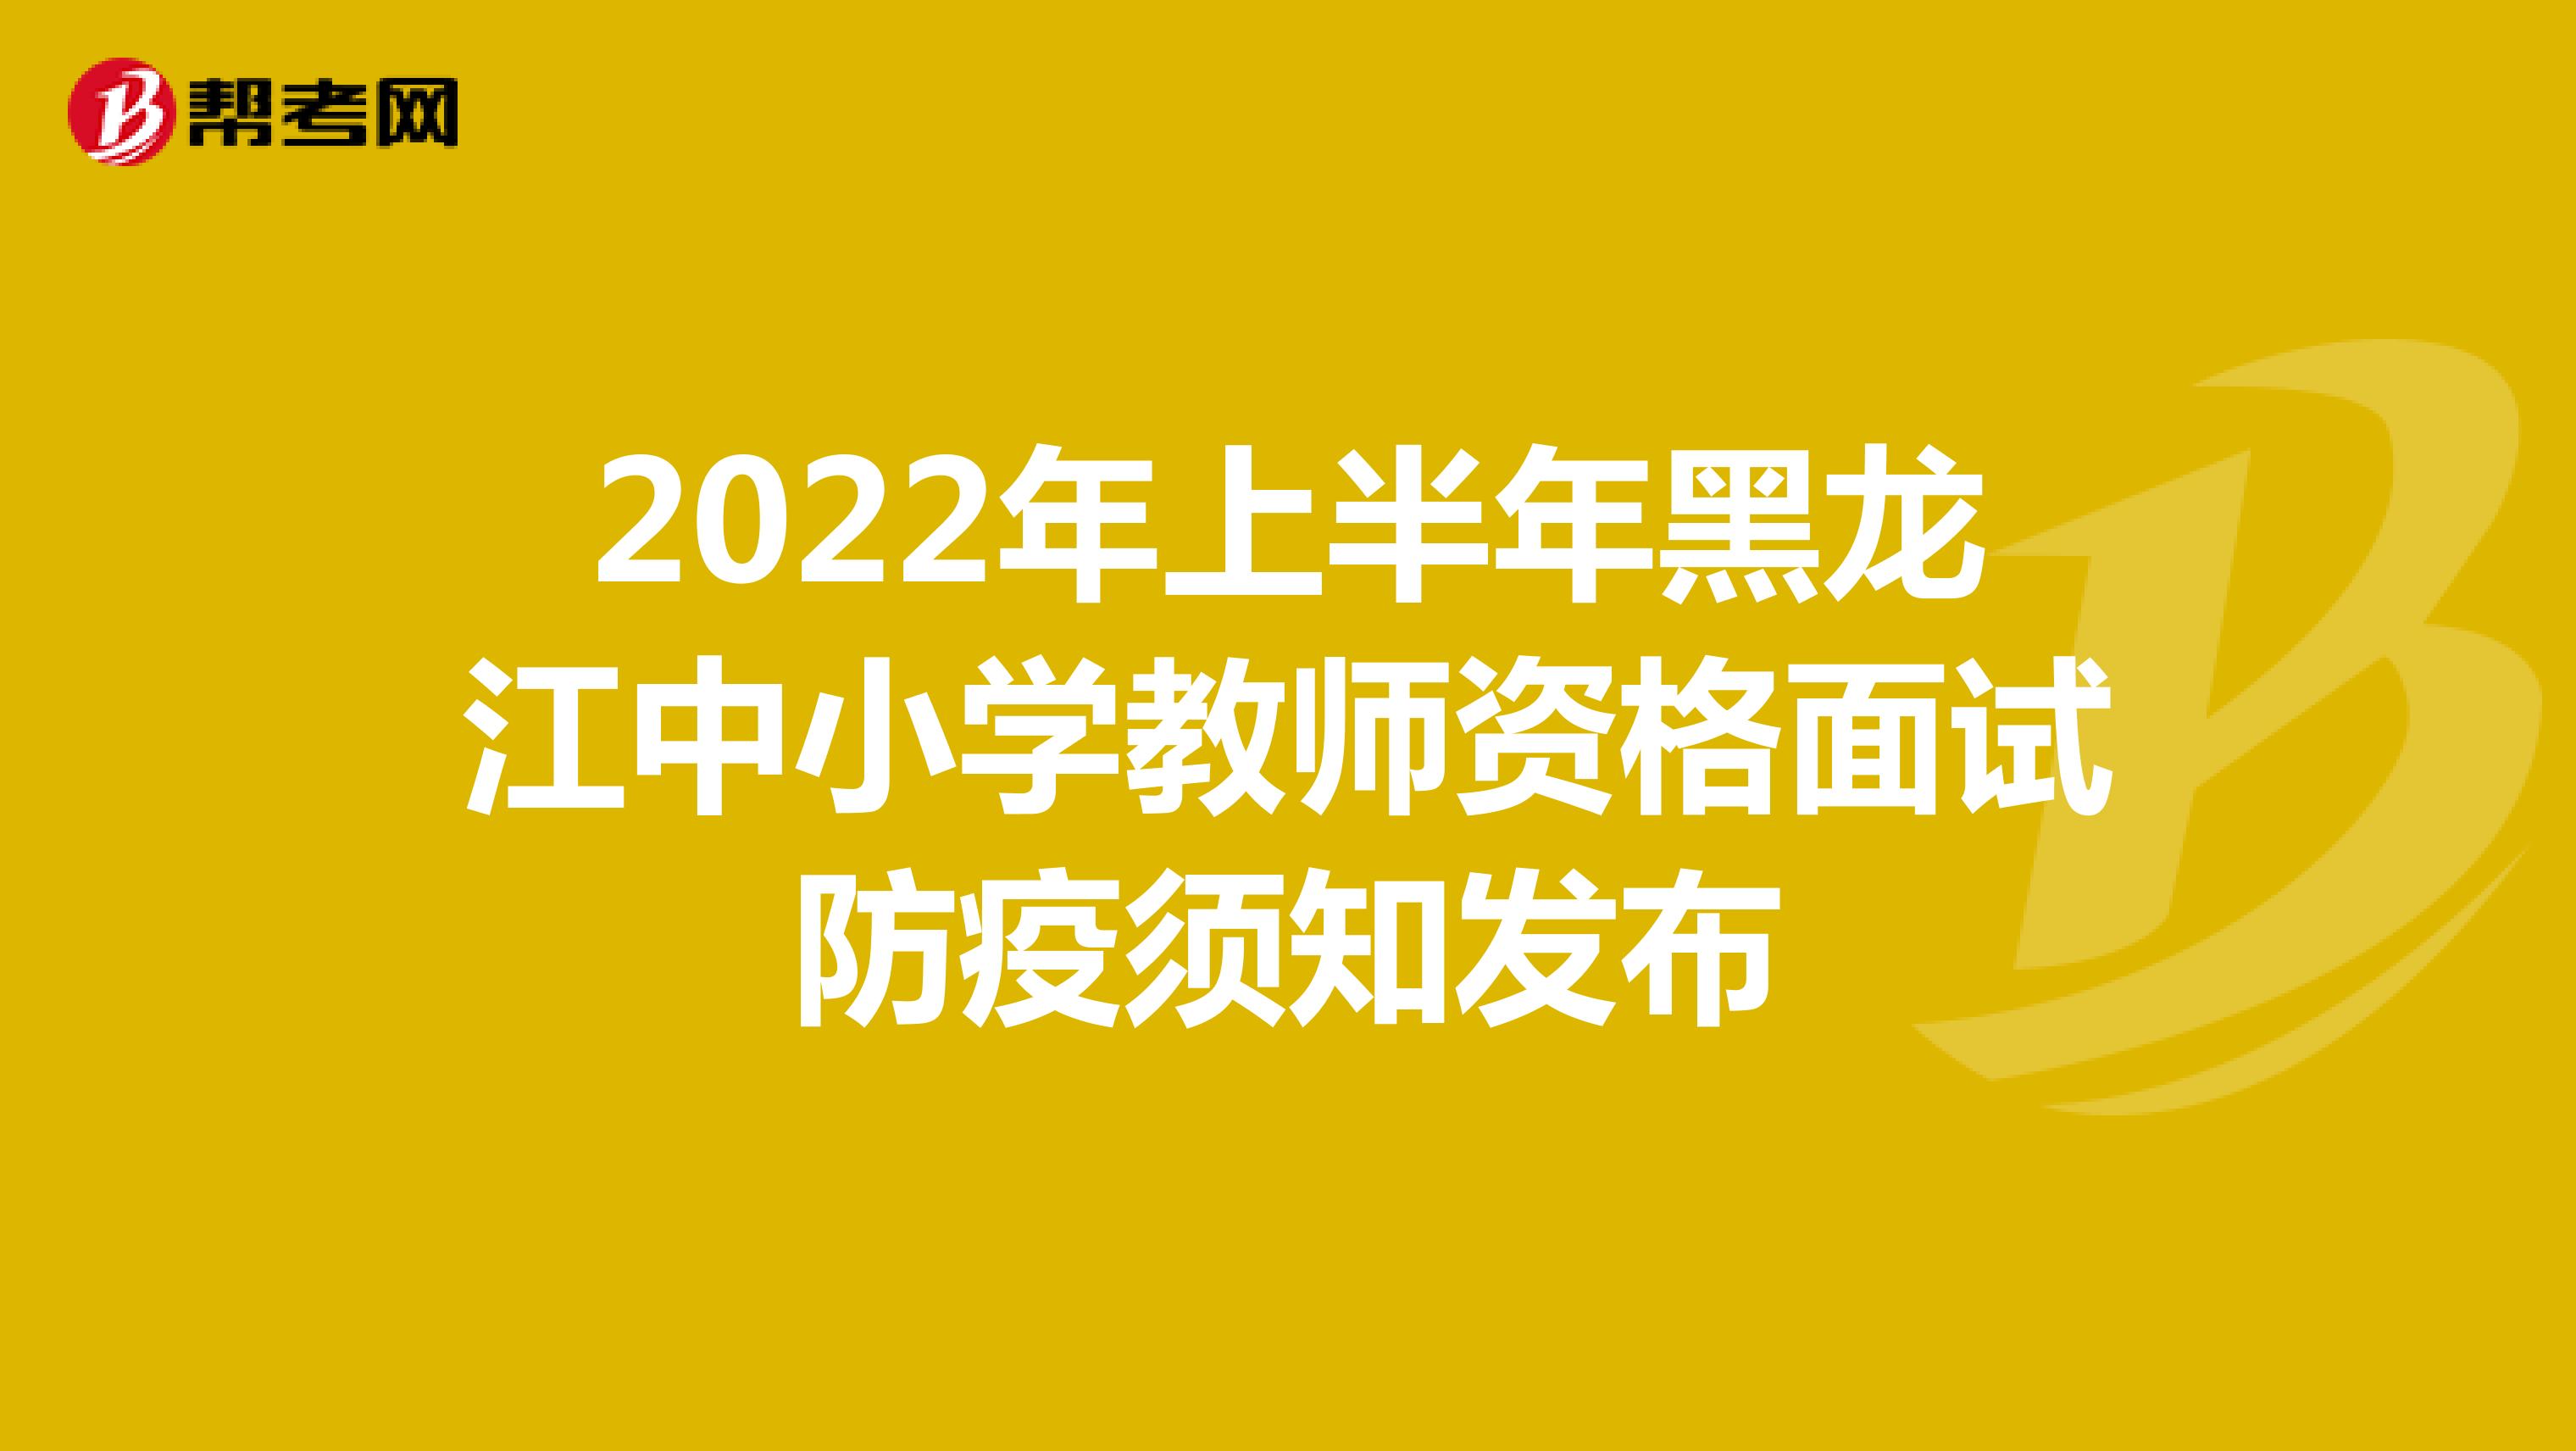 2022年上半年黑龙江中小学教师资格面试防疫须知发布